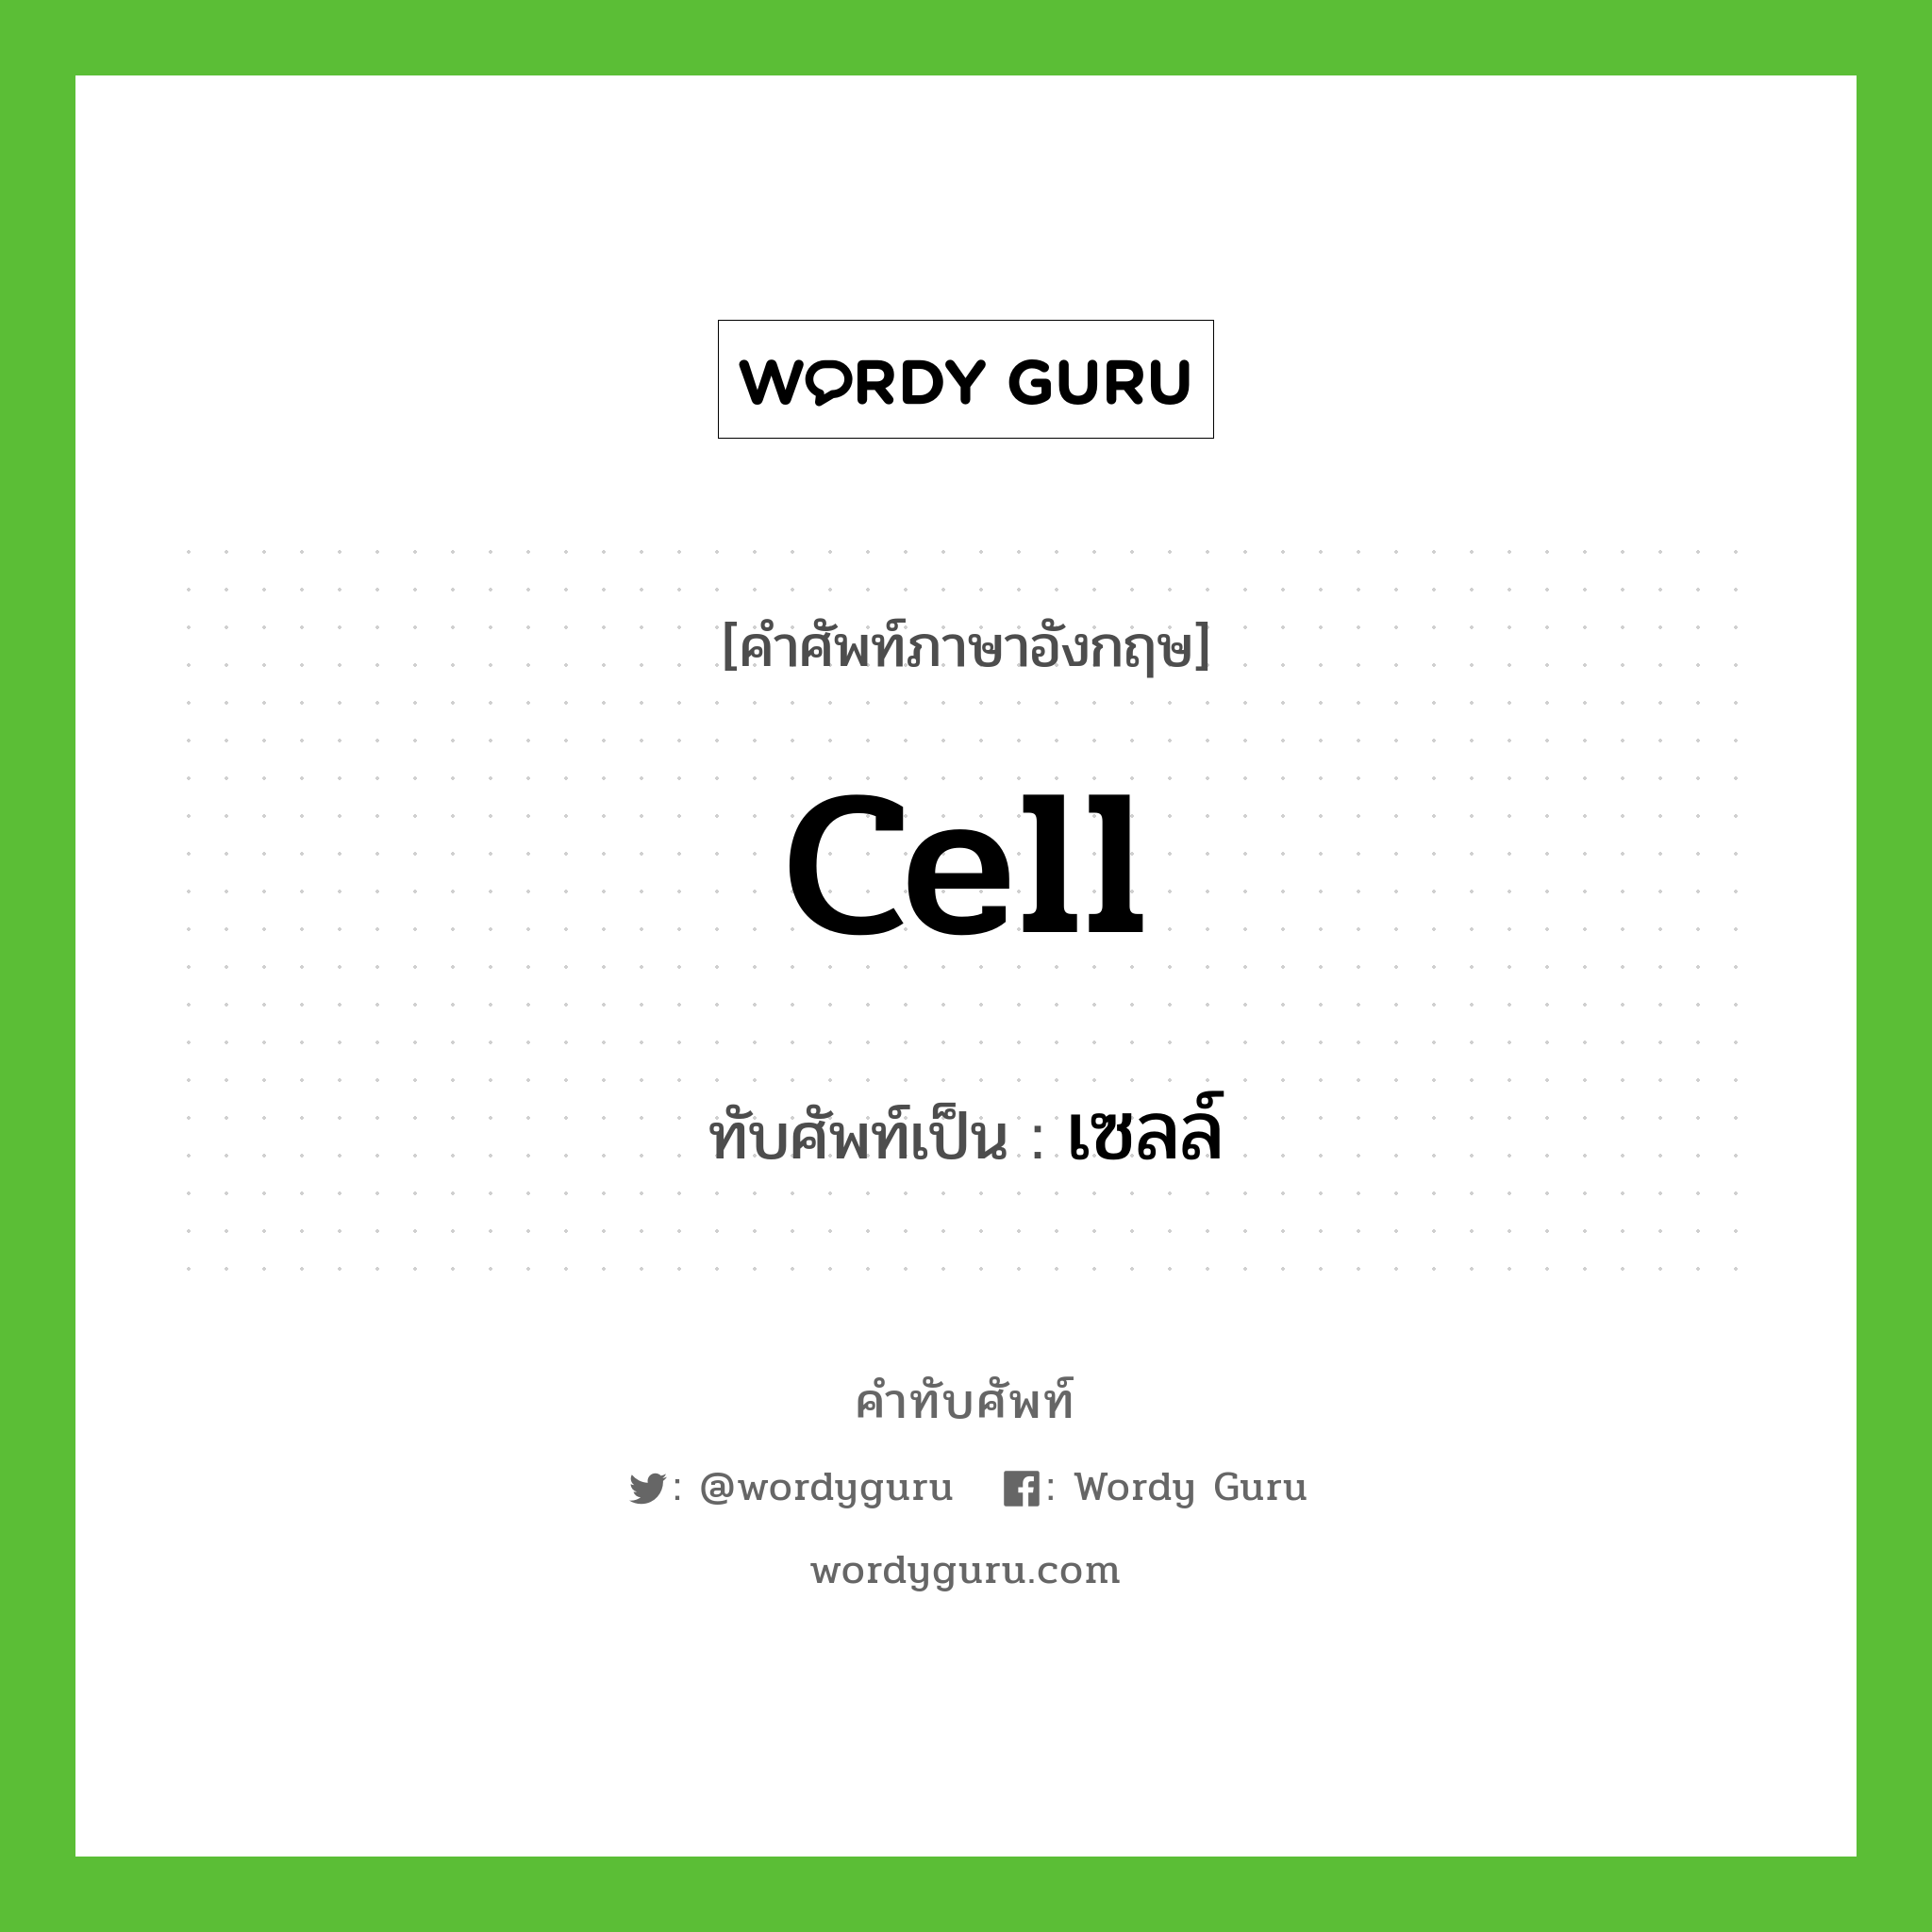 cell เขียนเป็นคำไทยว่าอะไร?, คำศัพท์ภาษาอังกฤษ cell ทับศัพท์เป็น เซลล์